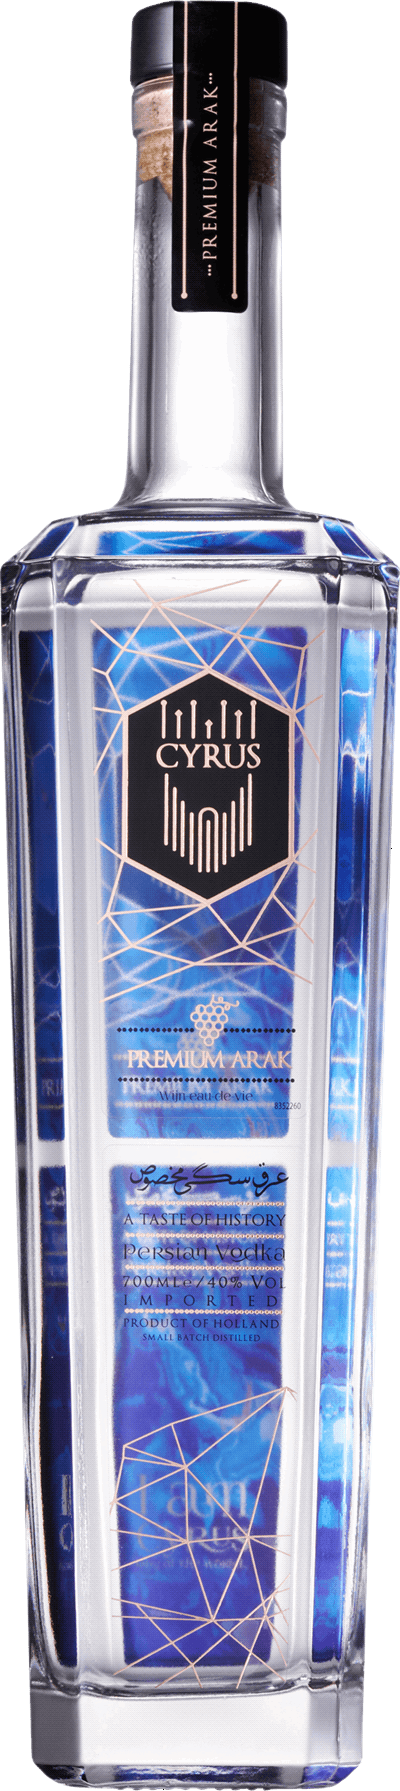 Cyrus Premium Arak 